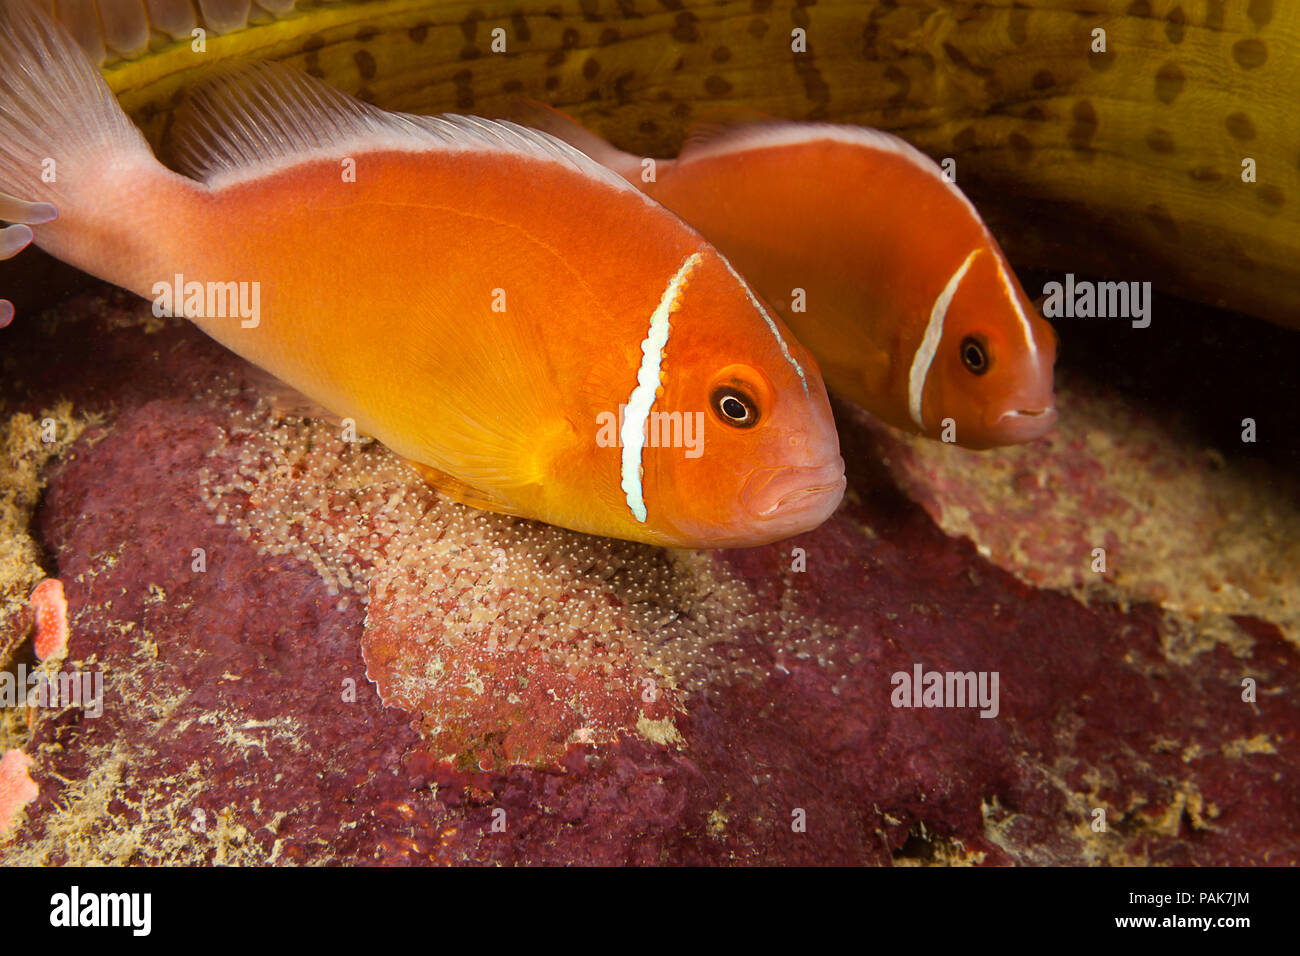 Una coppia di comune, anemonefish Amphiprion perideraion, oltre la loro massa di uovo, alla base dell'anemone, Heteractis magnifica, Yap, Micronesia. Foto Stock